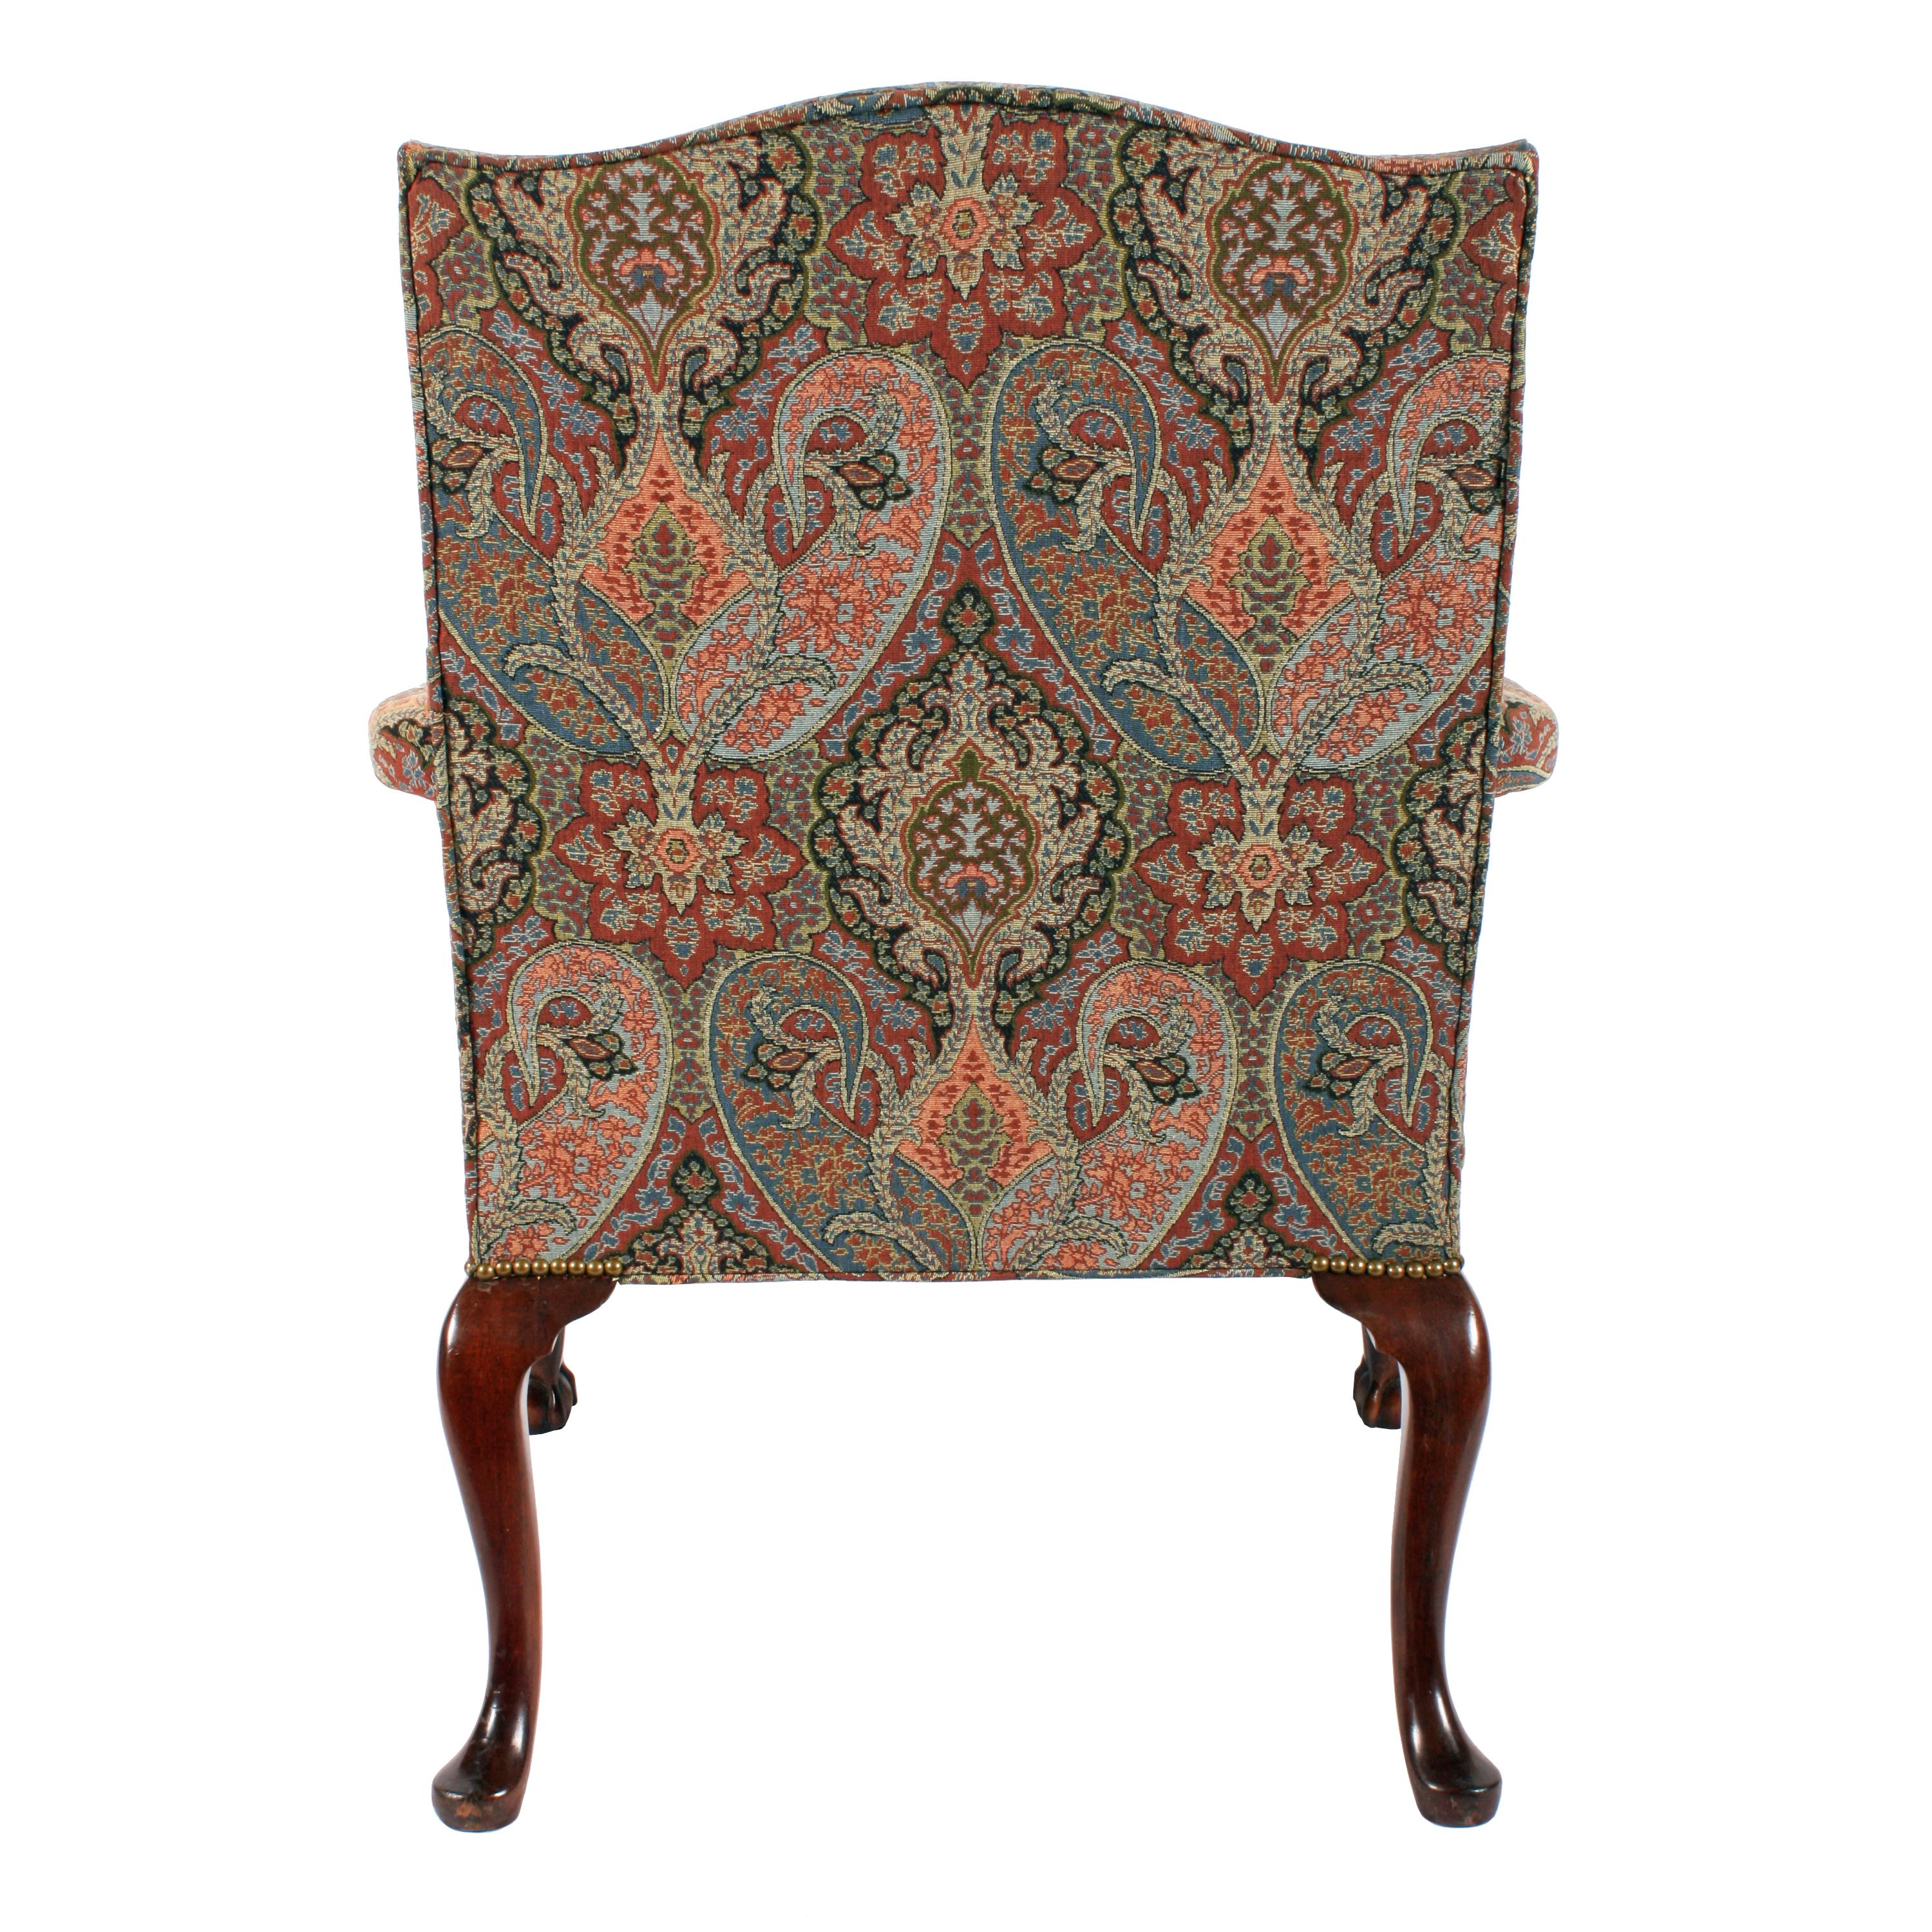 British 18th Century Style Gainsborough Chairs